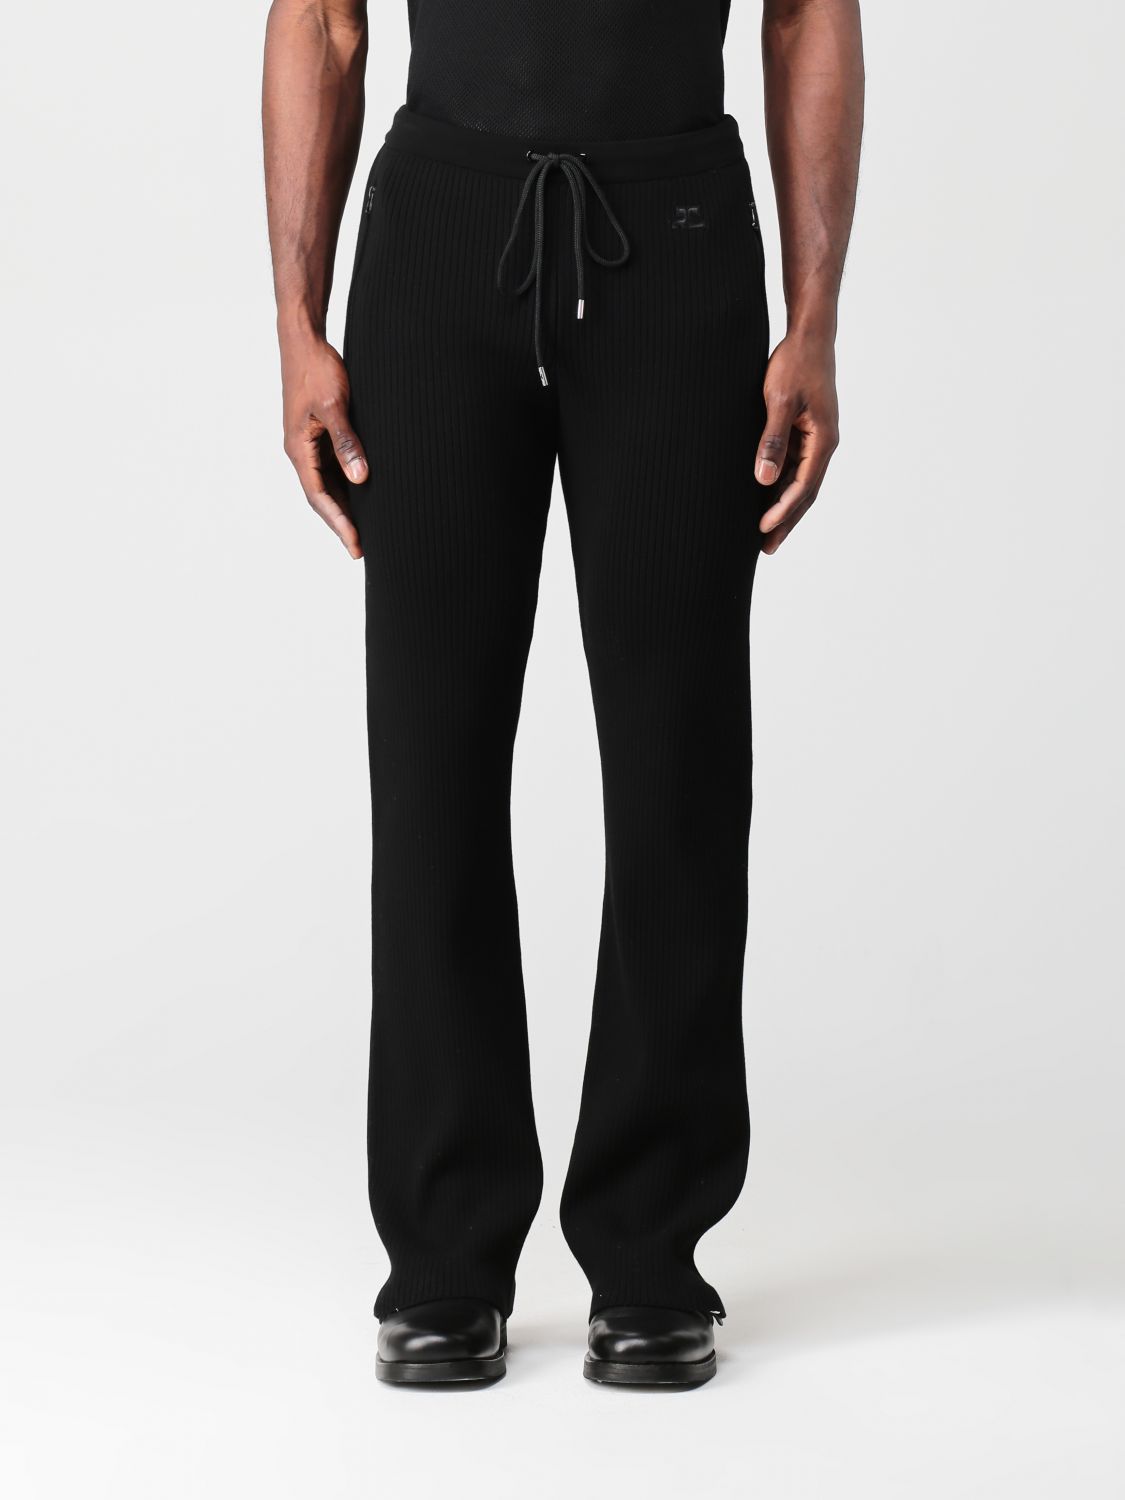 Pantalon Courrèges: Pantalon Courrèges homme noir 1